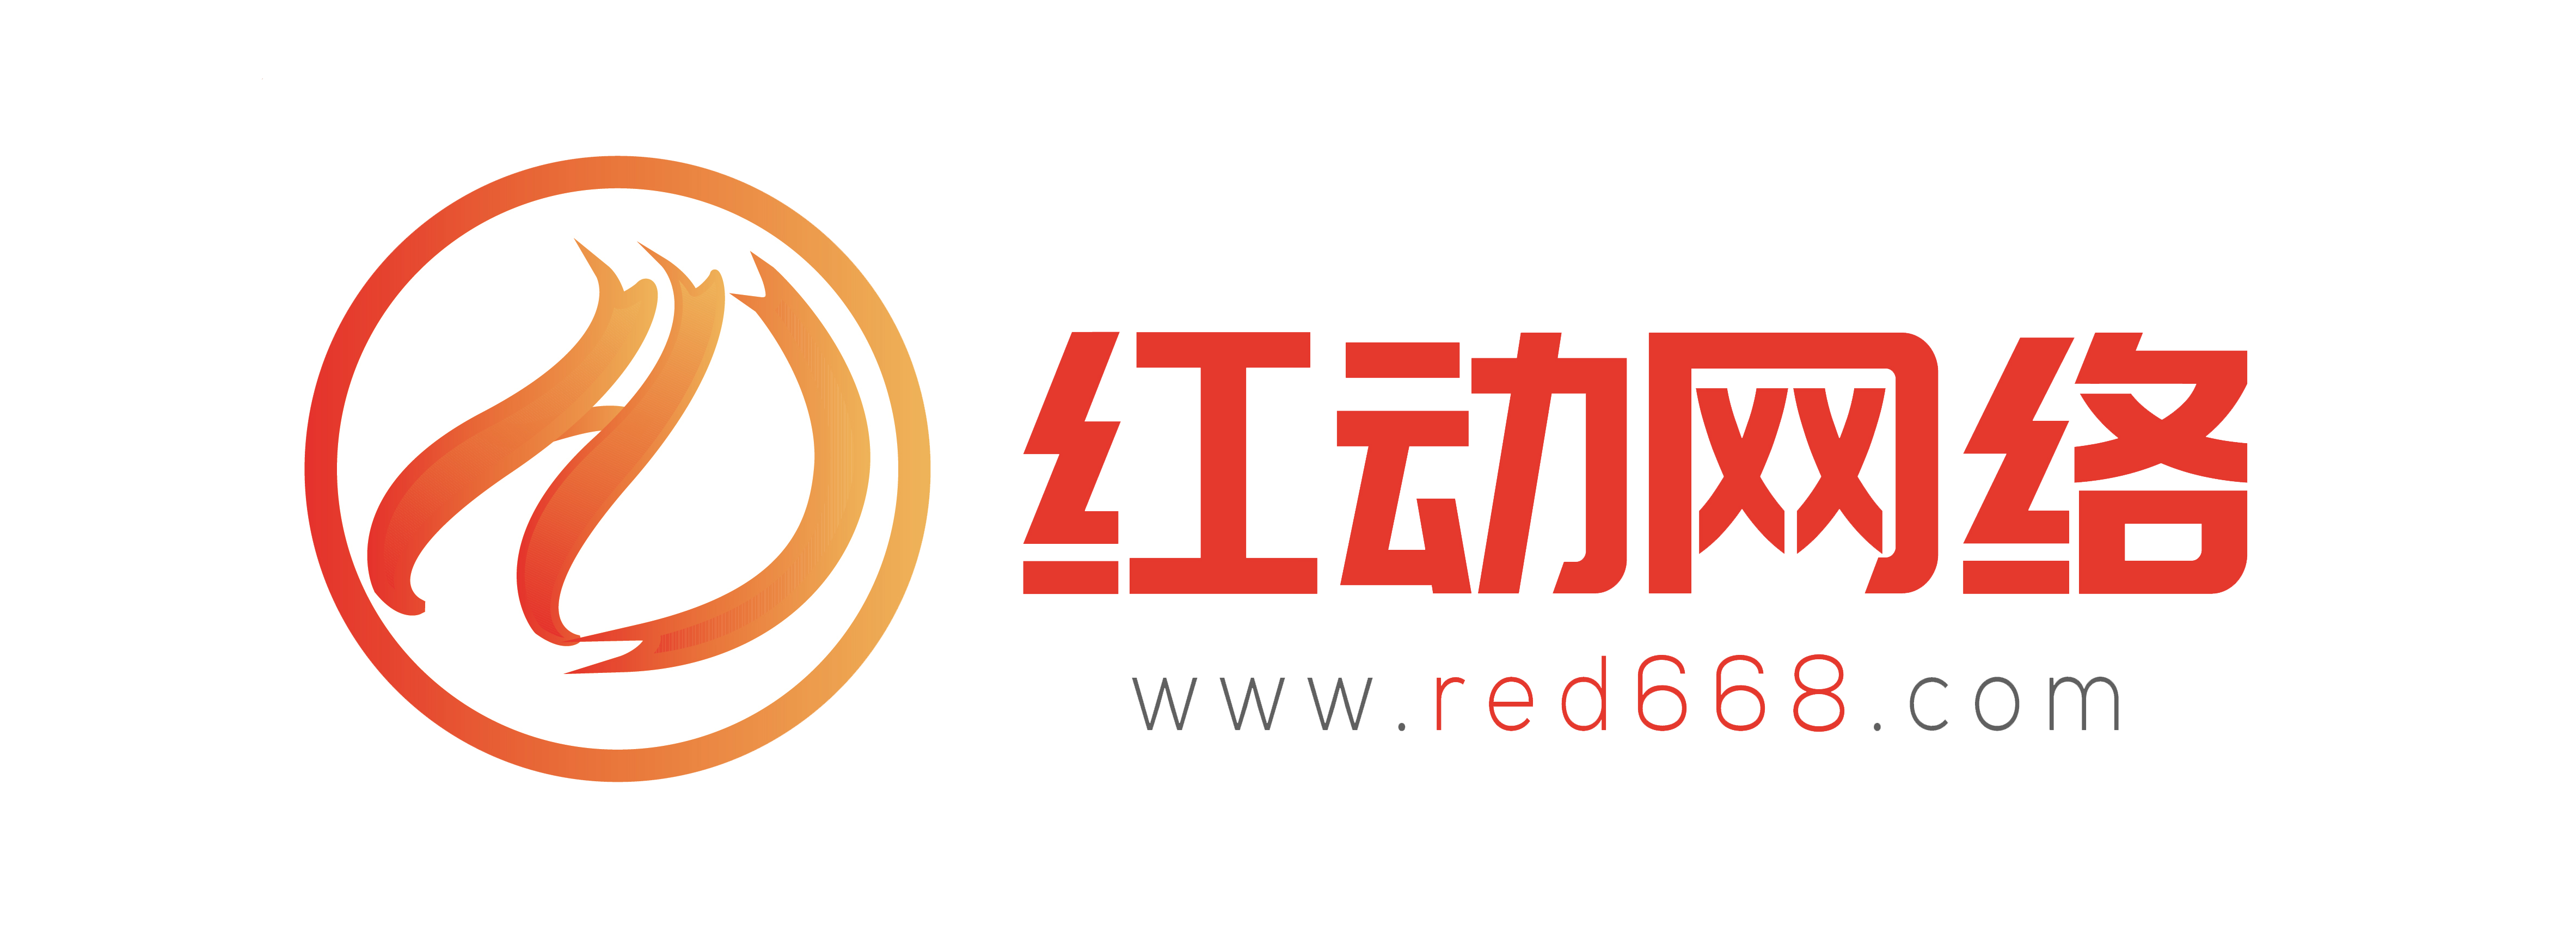 杭州红动网络科技有限公司